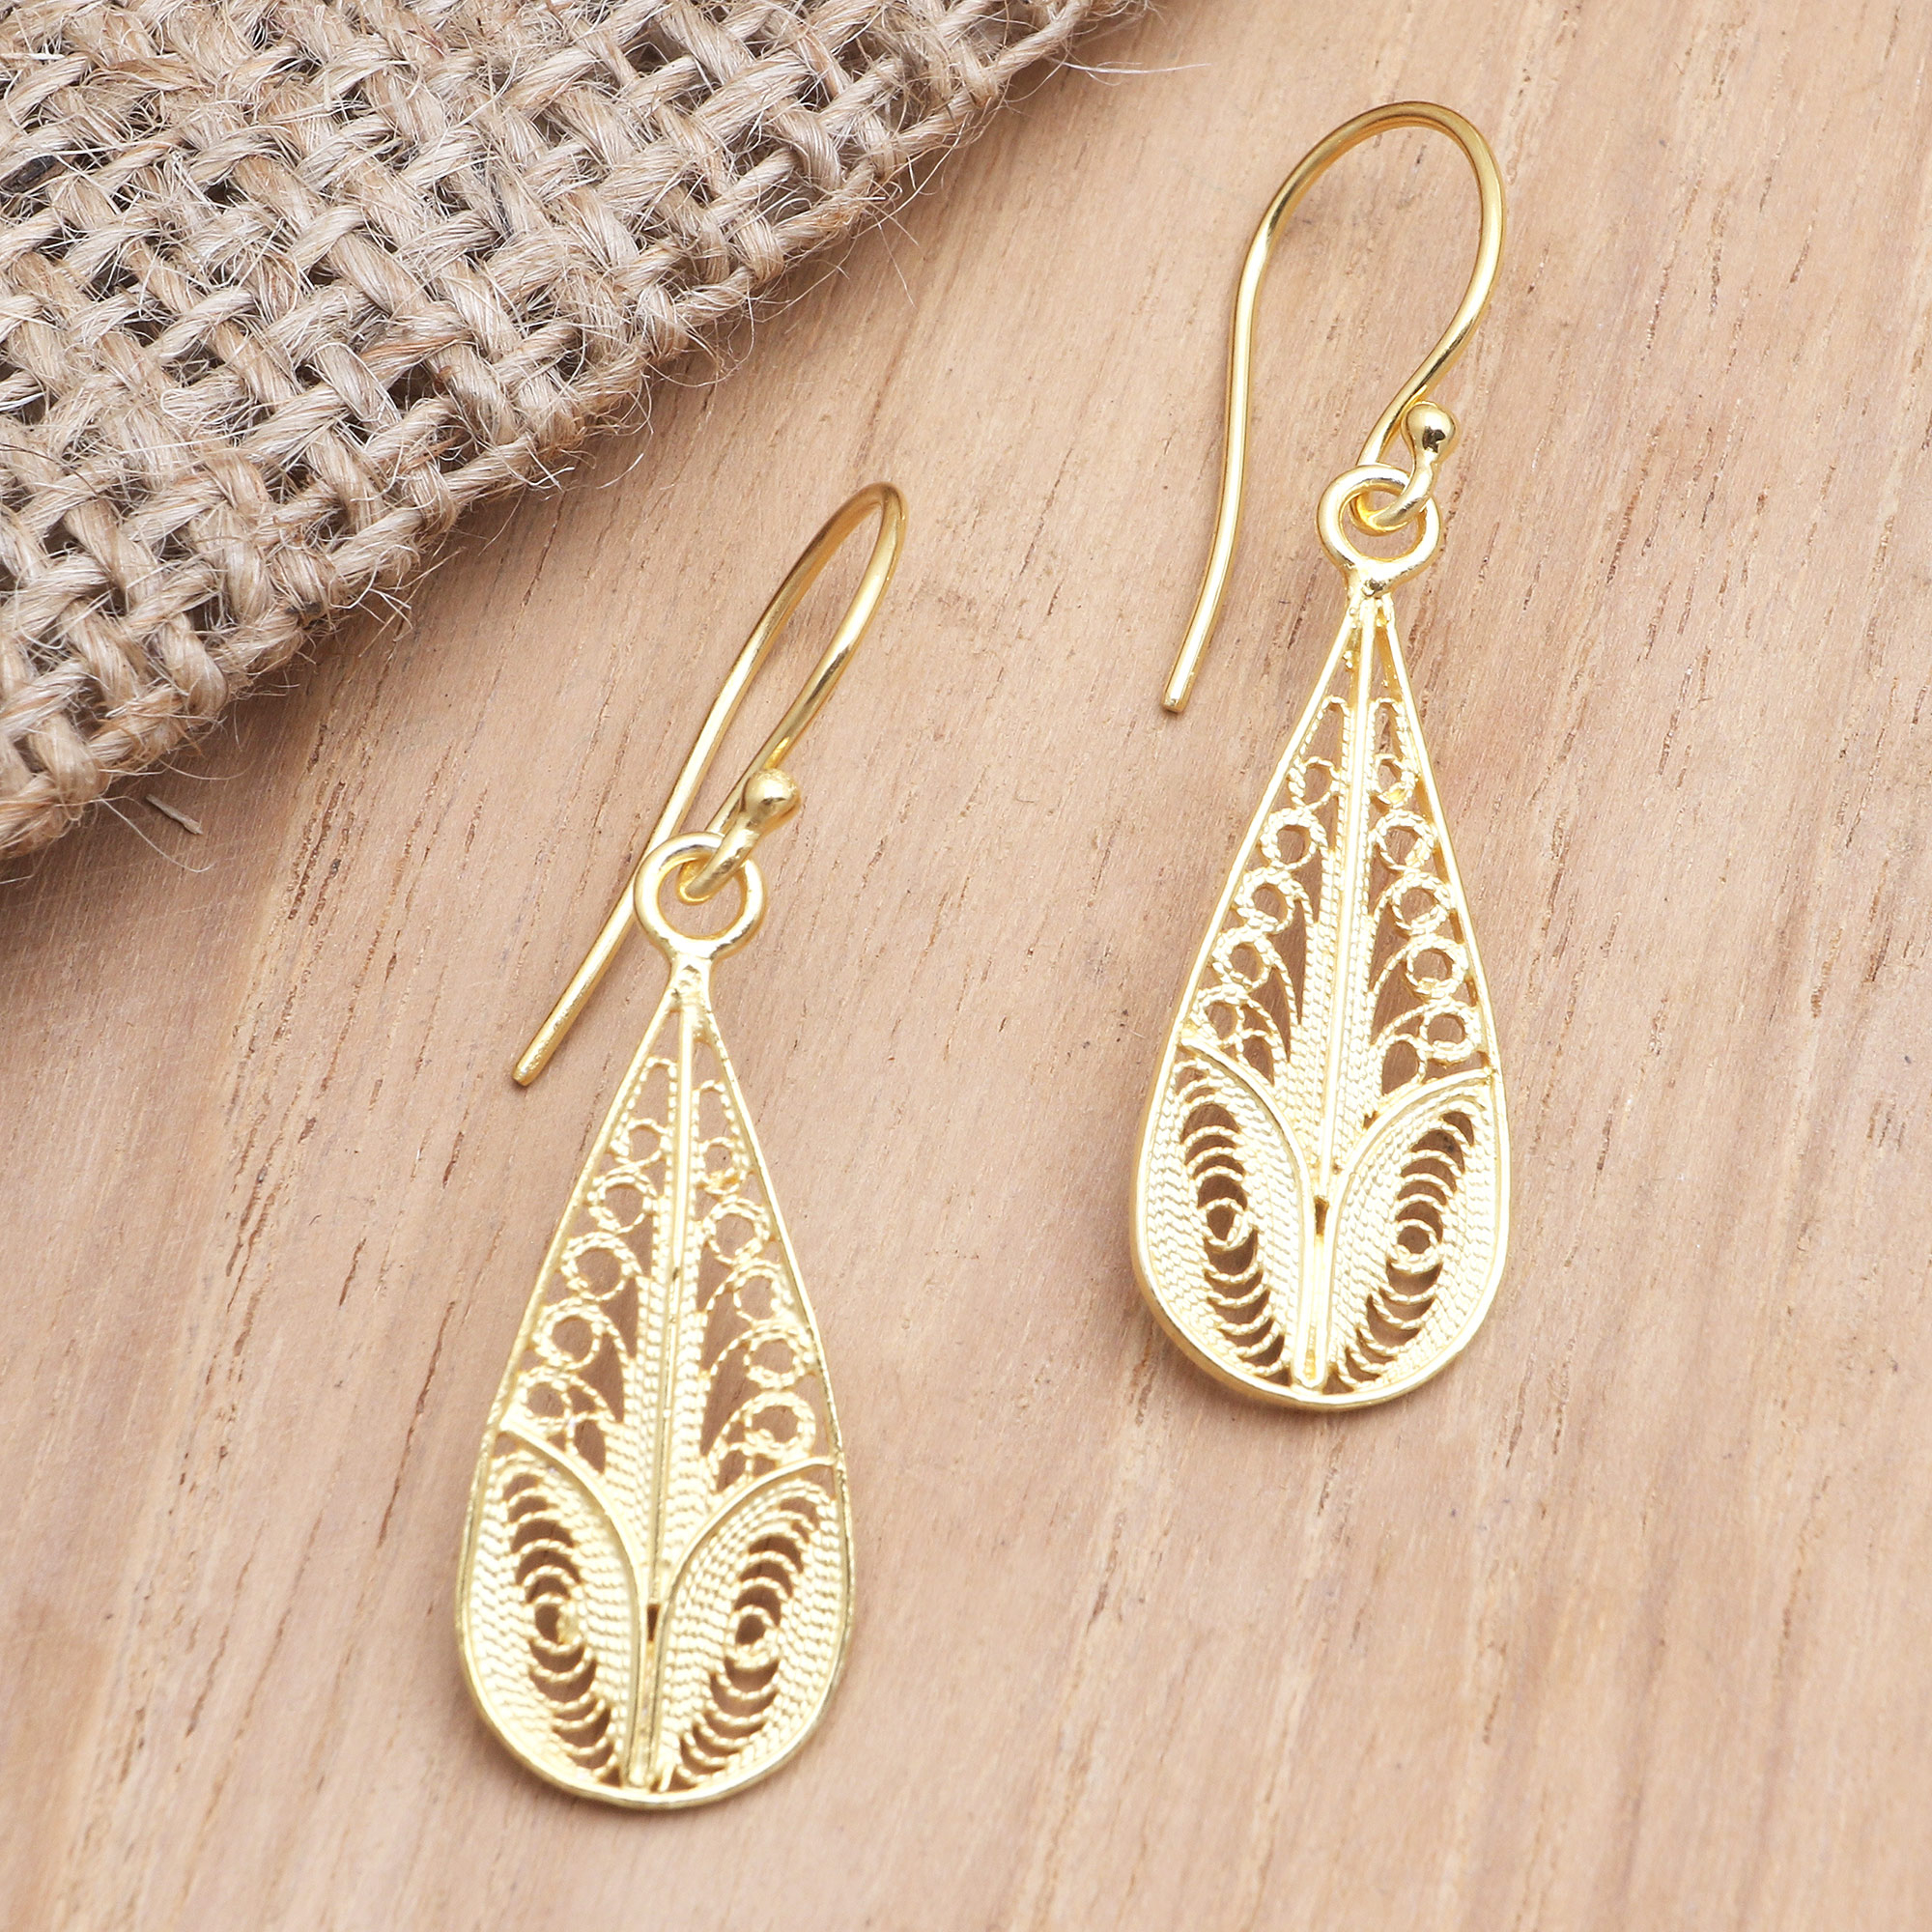 Gold Filigree Pear Earrings - Victorian – Dames a la Mode